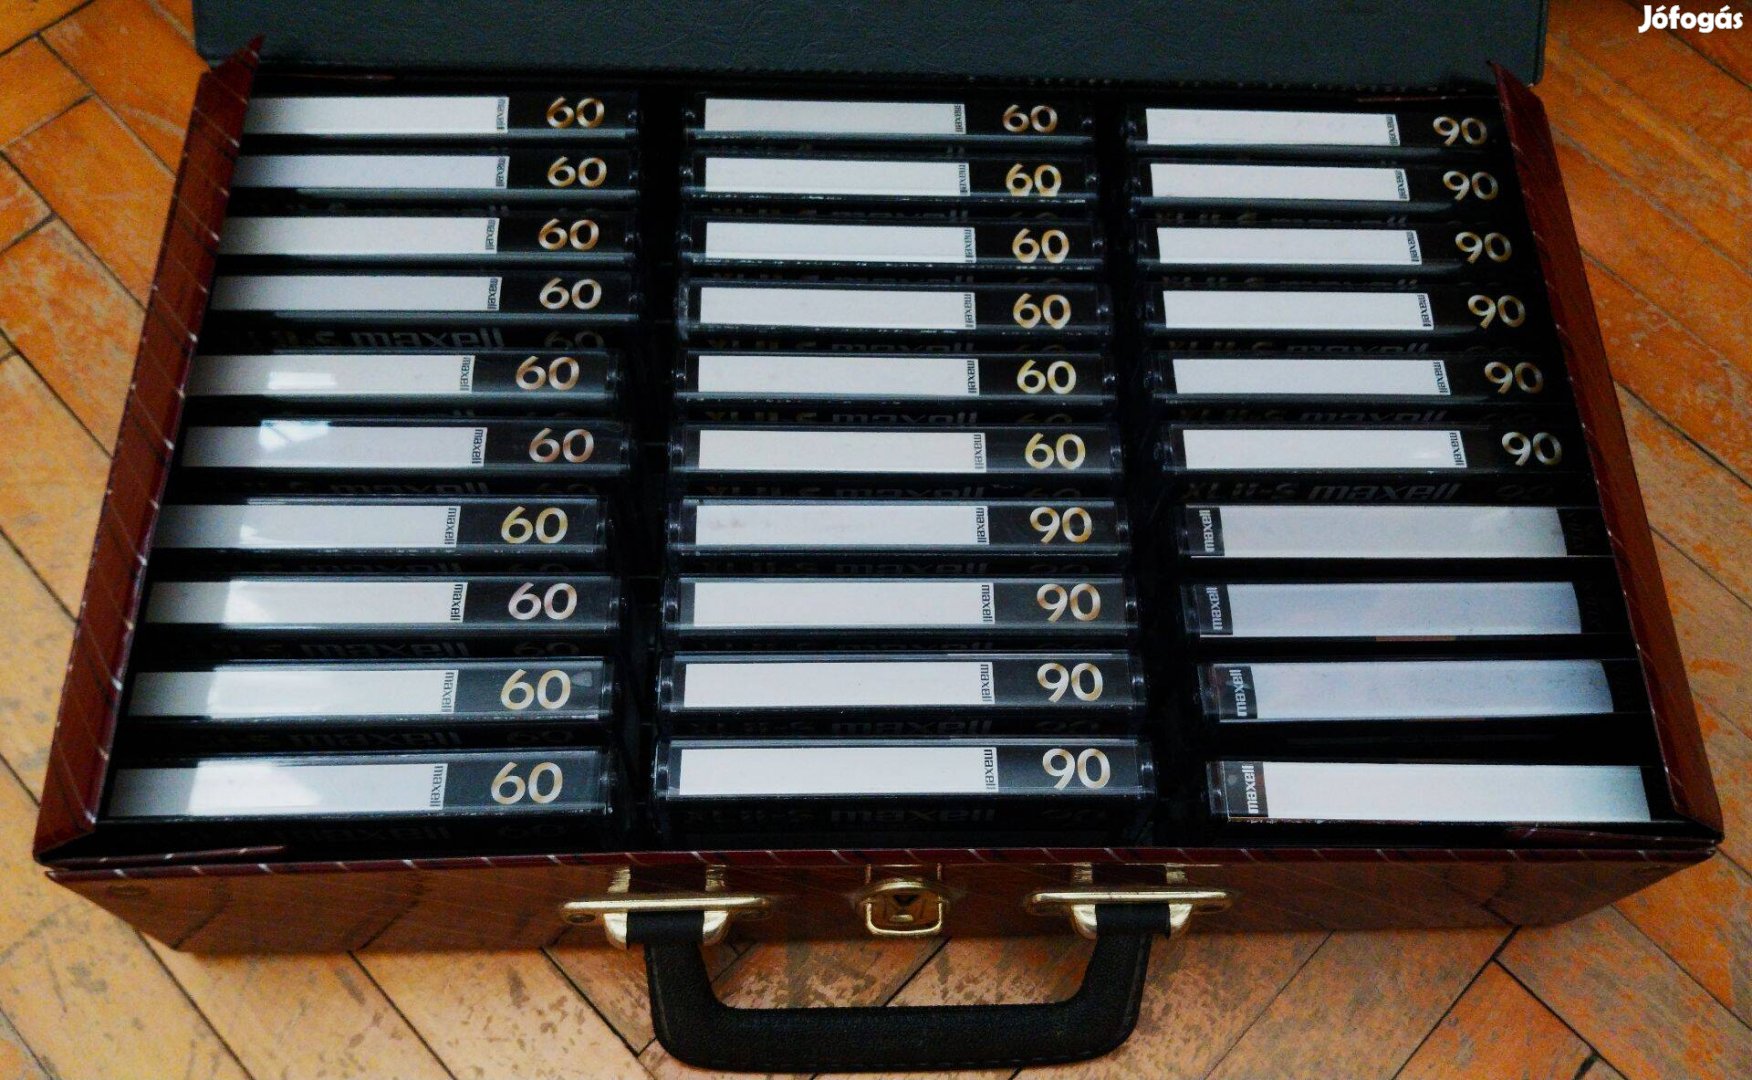 30 darab Maxell XL ll-S type ll chromos audio kazetta táskában!